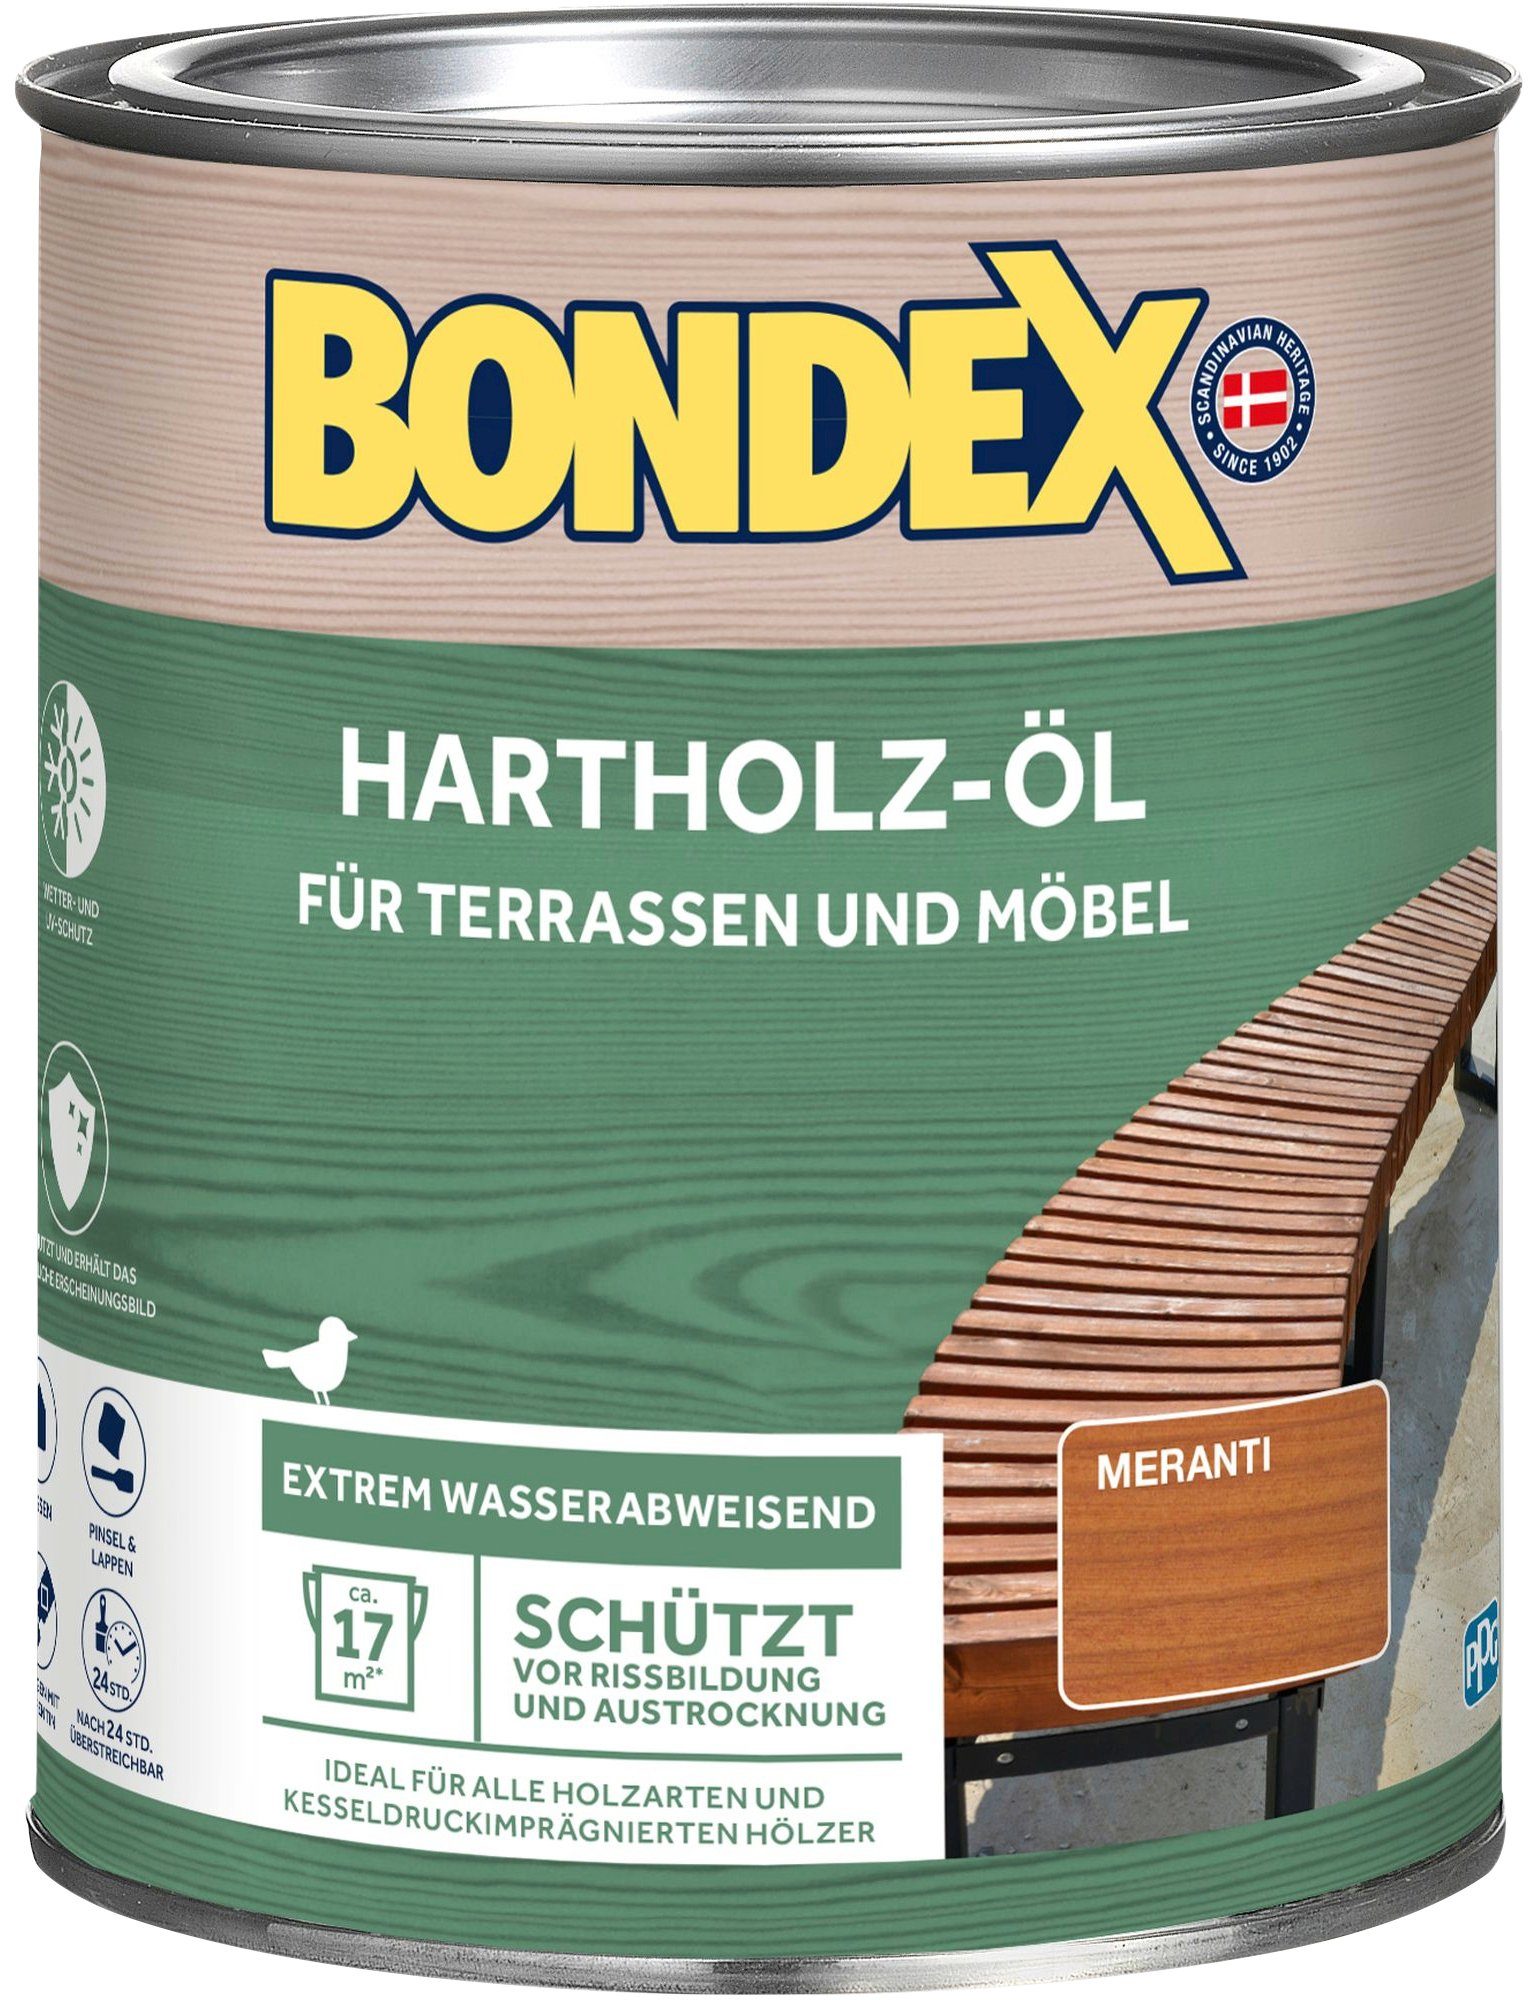 Inhalt Bondex 0,75 Meranti, Holzöl Liter HARTHOLZ-ÖL,